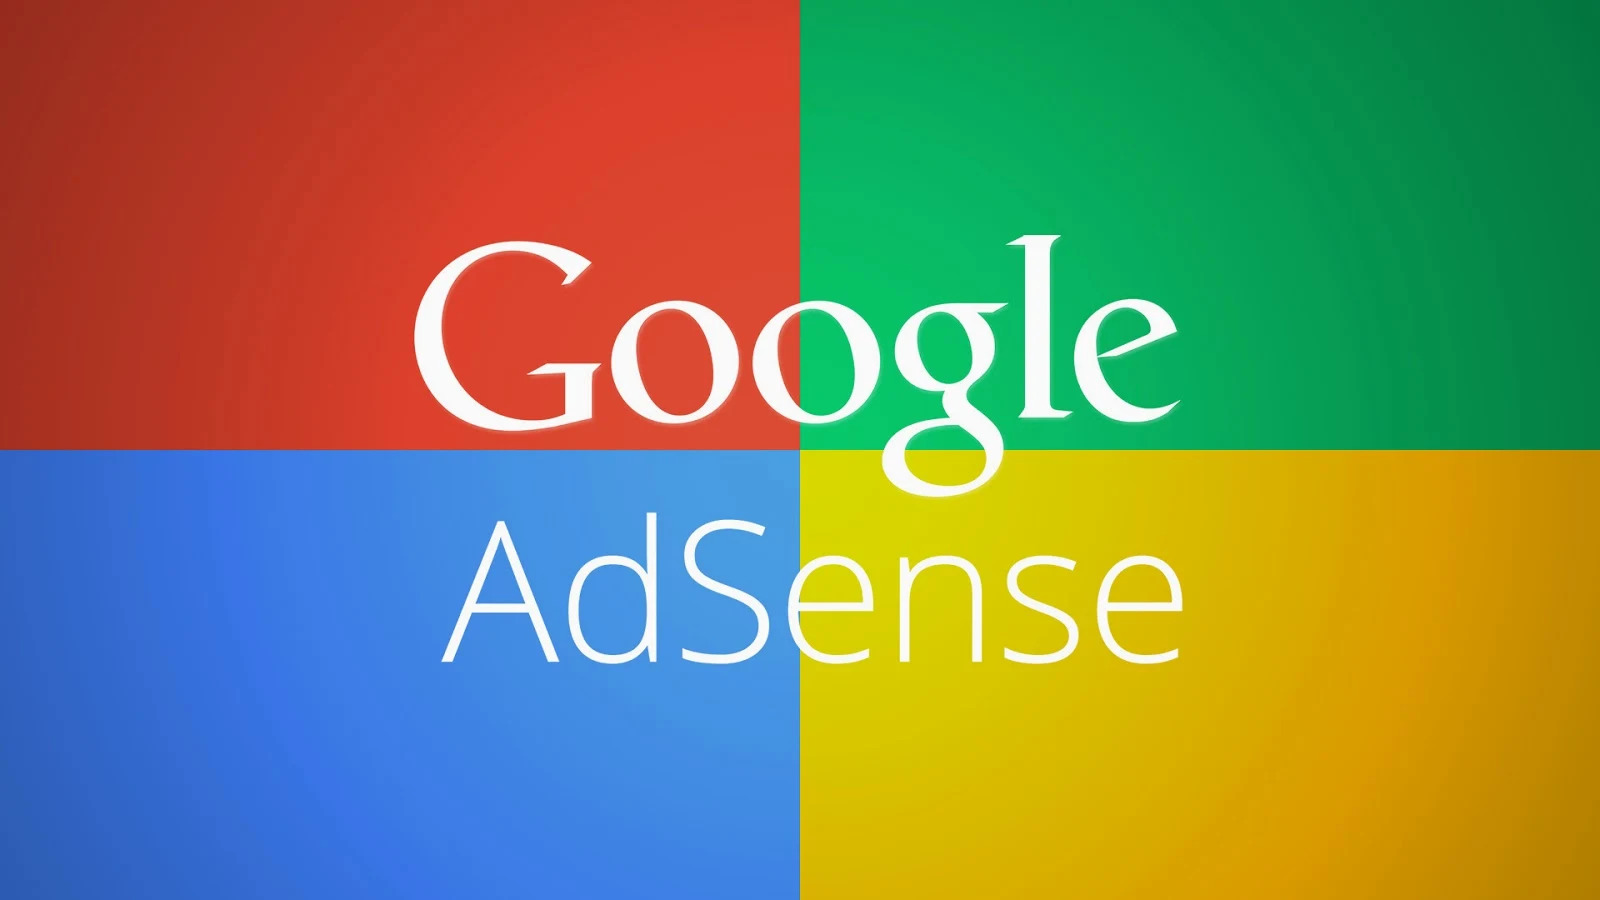 Aplikasi Google Adsense Untuk Android GoogleAdsense.apk